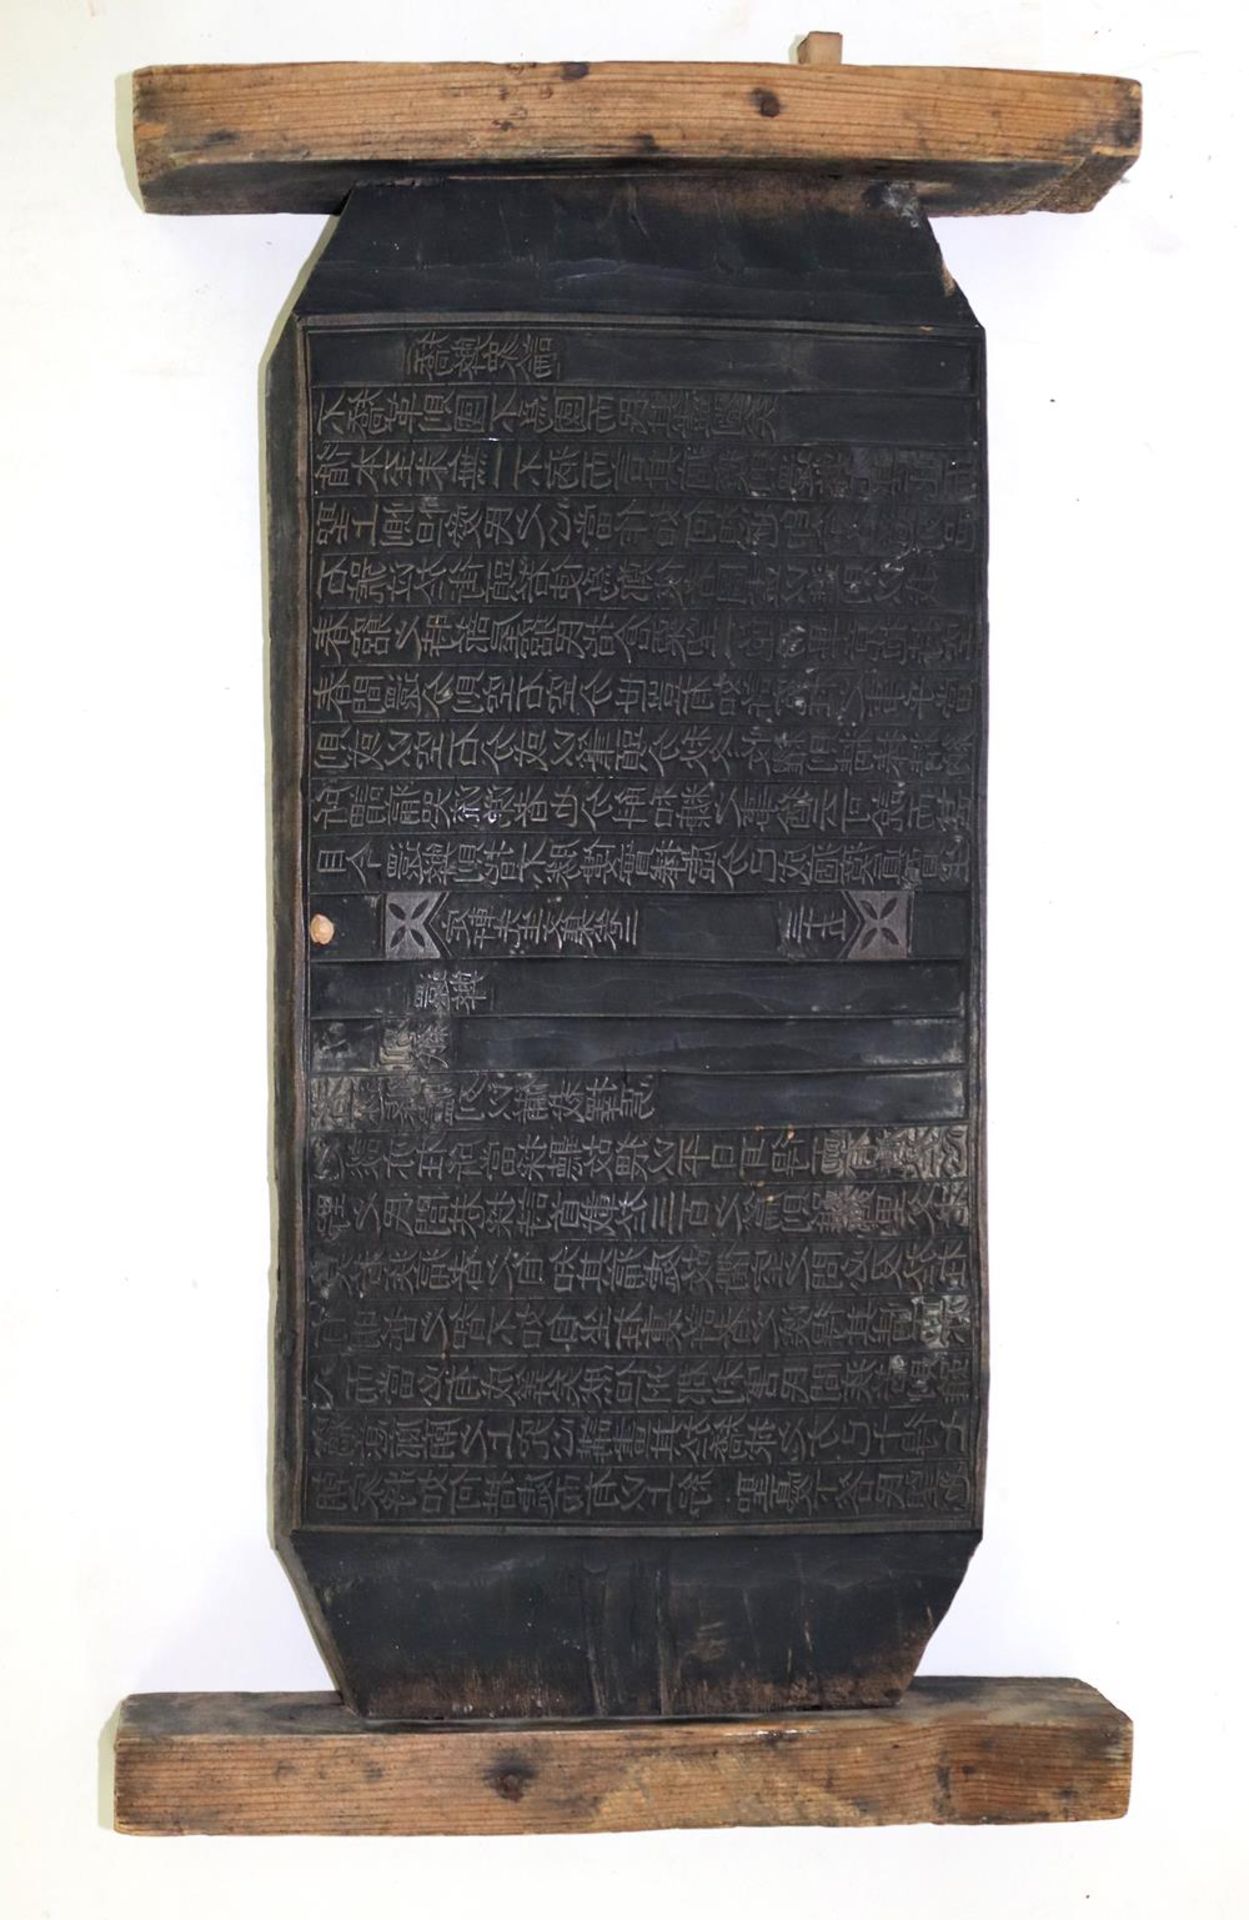 Koreanischer Kalender.Beidseitig bearbeitetete Holztafel mit geschnittenen chinesischen